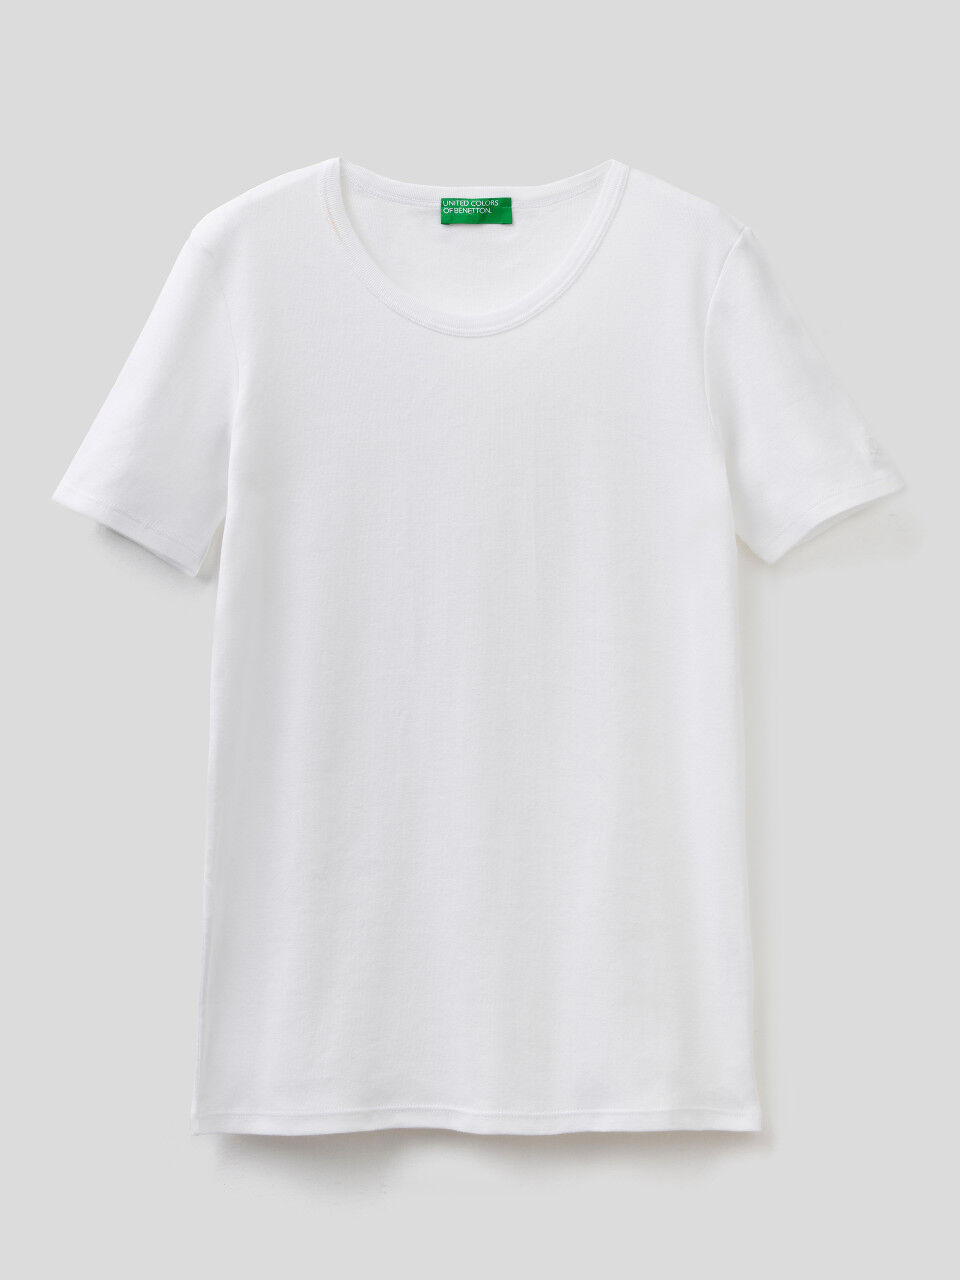 Haut Color Block Avec Maille United Colors of Benetton Fille Vêtements Tops & T-shirts Tops Débardeurs 